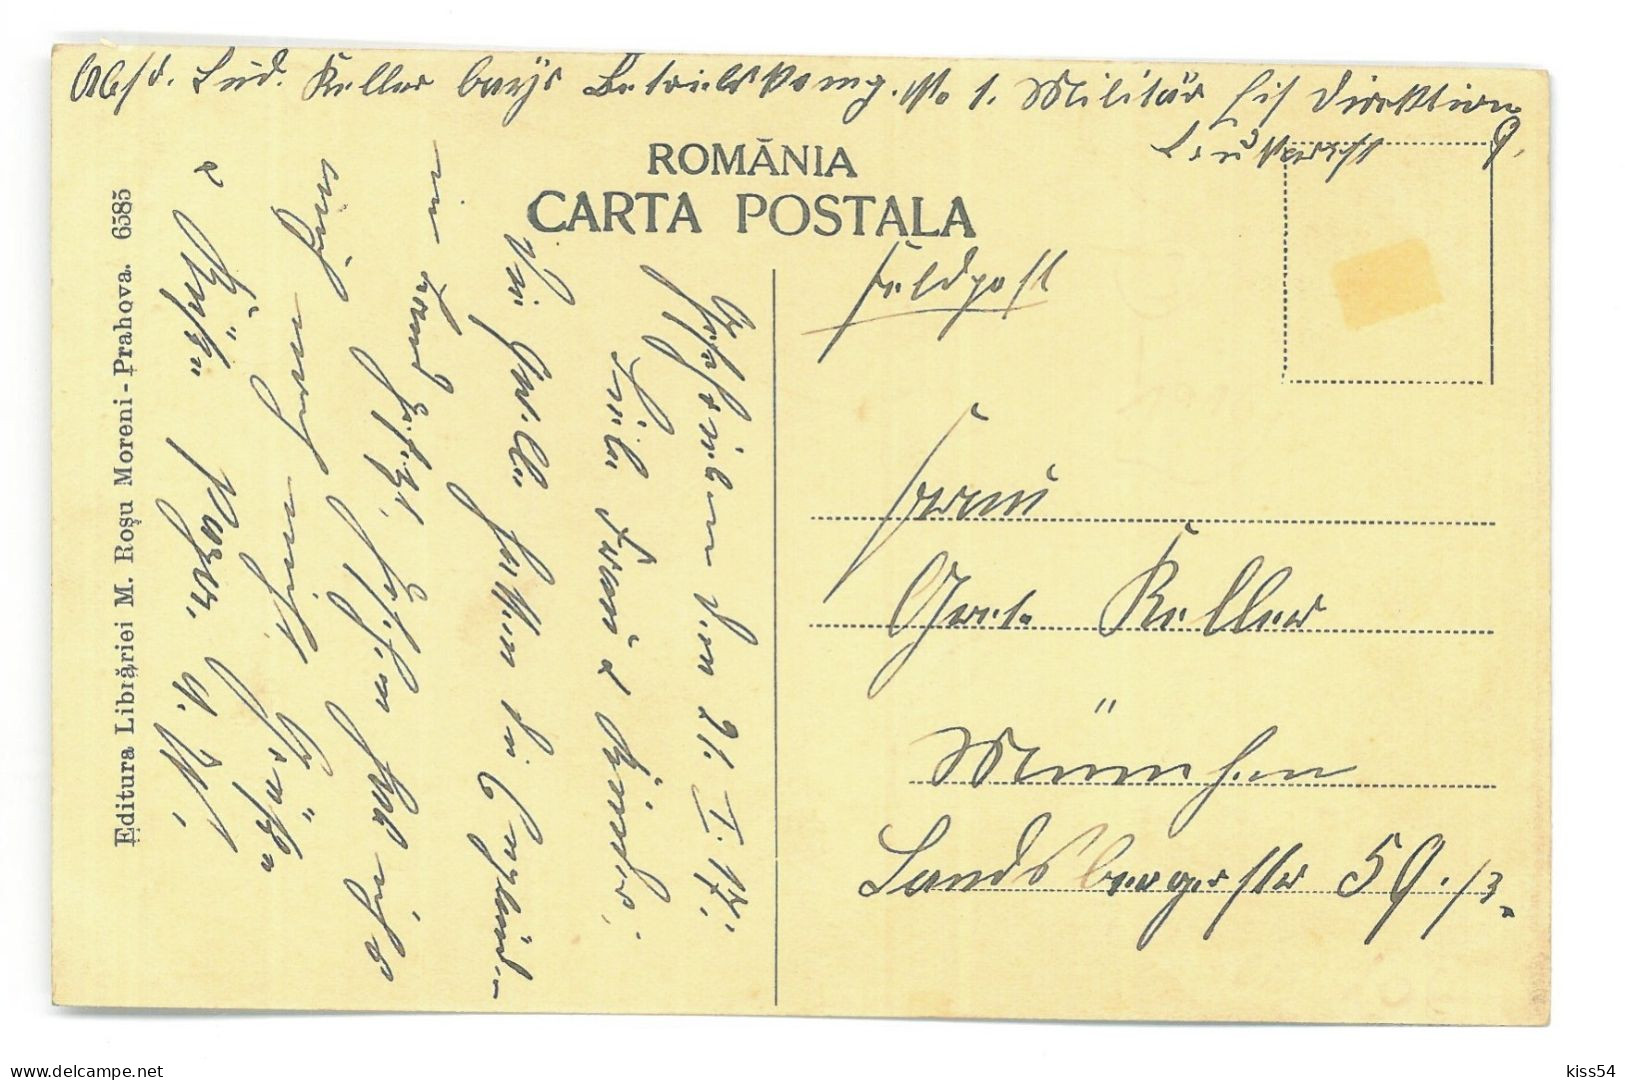 RO 86 - 25421 MORENI, Prahova, Eruptia Unei Sonde, Romania - Old Postcard - Used - 1917 - Roumanie